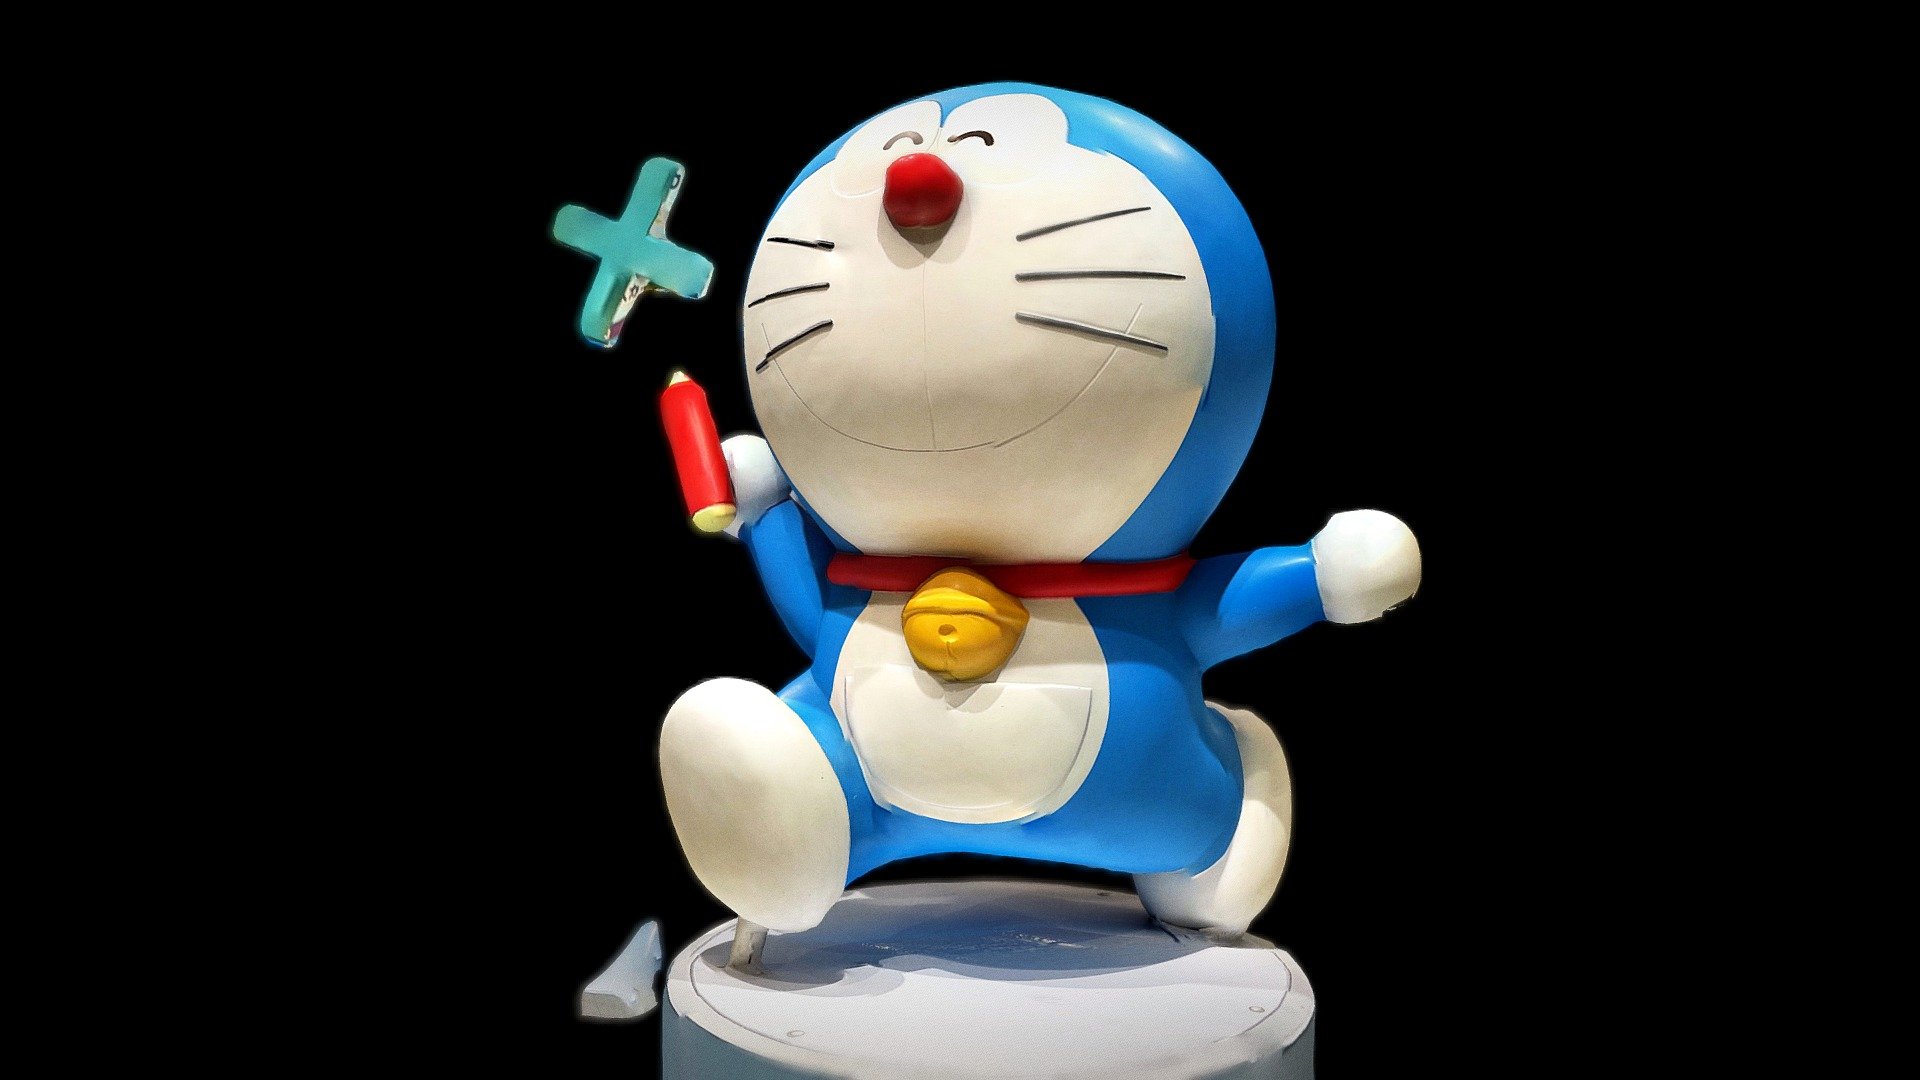 📍 新千歳空港, 千歳市, 北海道 - 新千歳空港のドラえもん：Doraemon at New Chitose Airport - 3D model by kazugoru 3d model